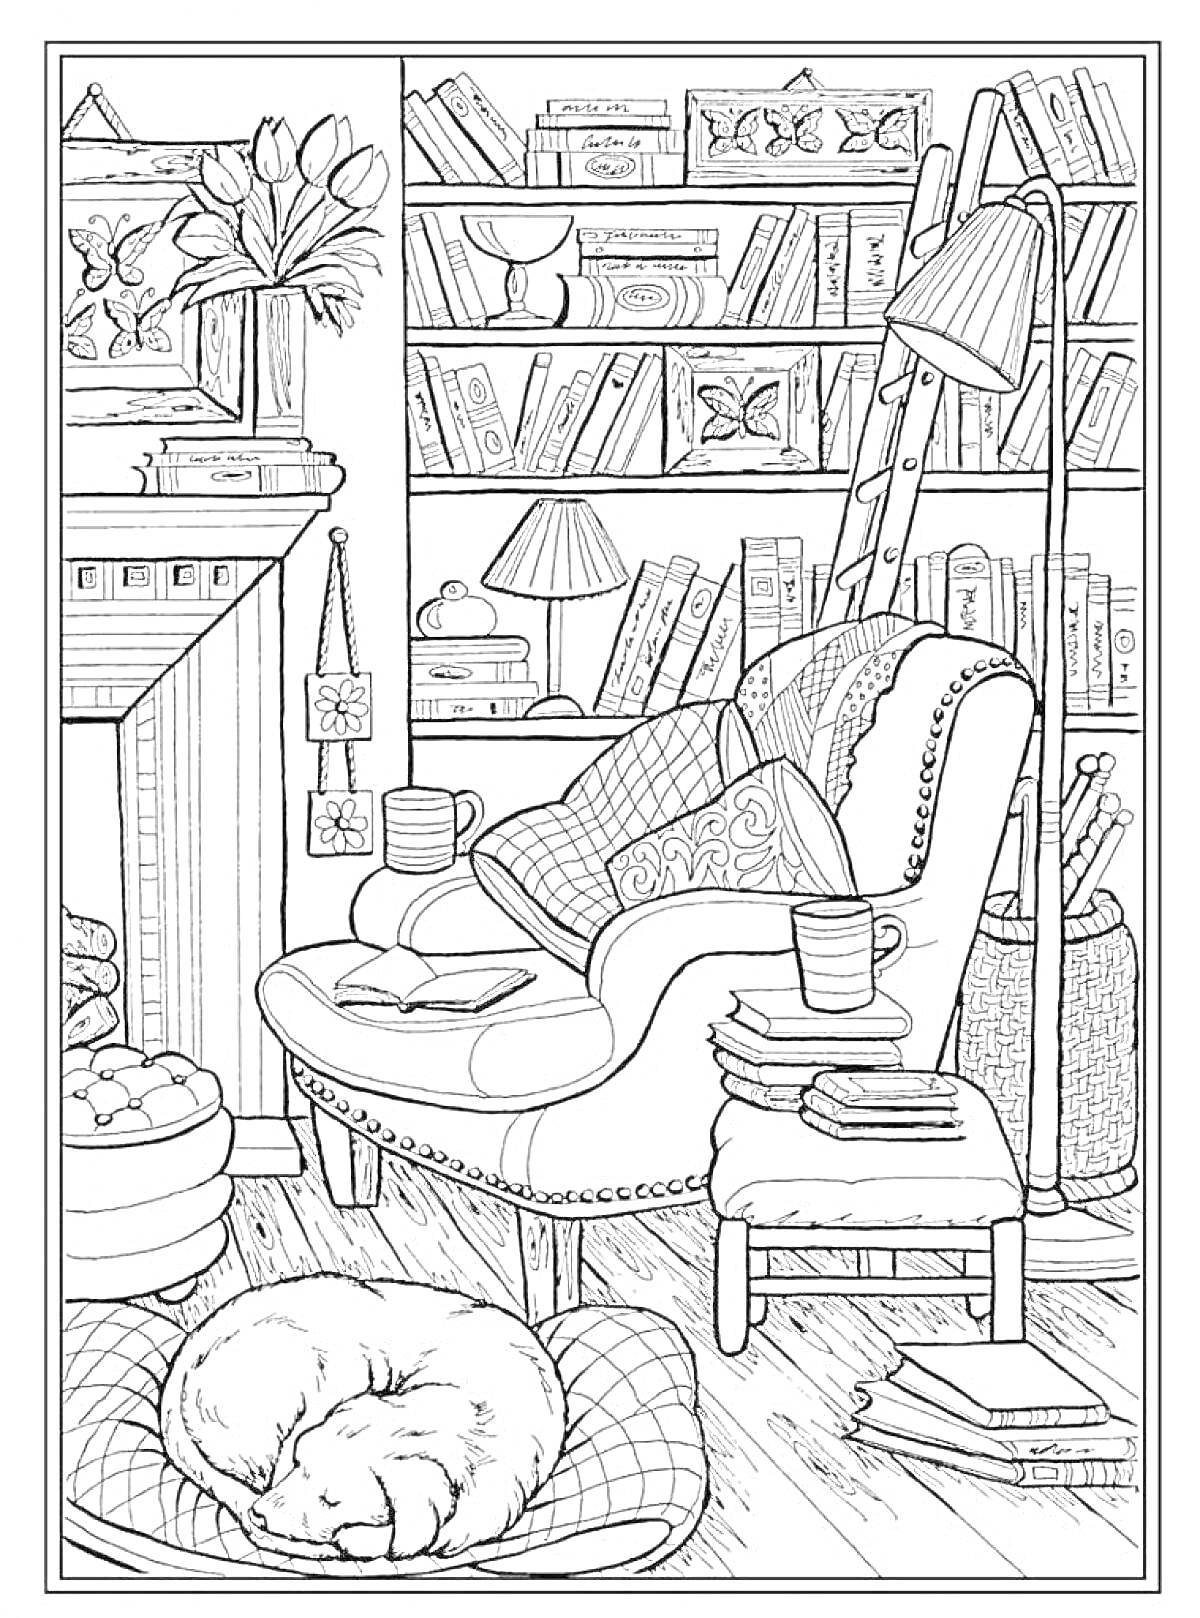 РаскраскаУютная комната с креслом, пушистым ковром, спящим собакой и книжными полками